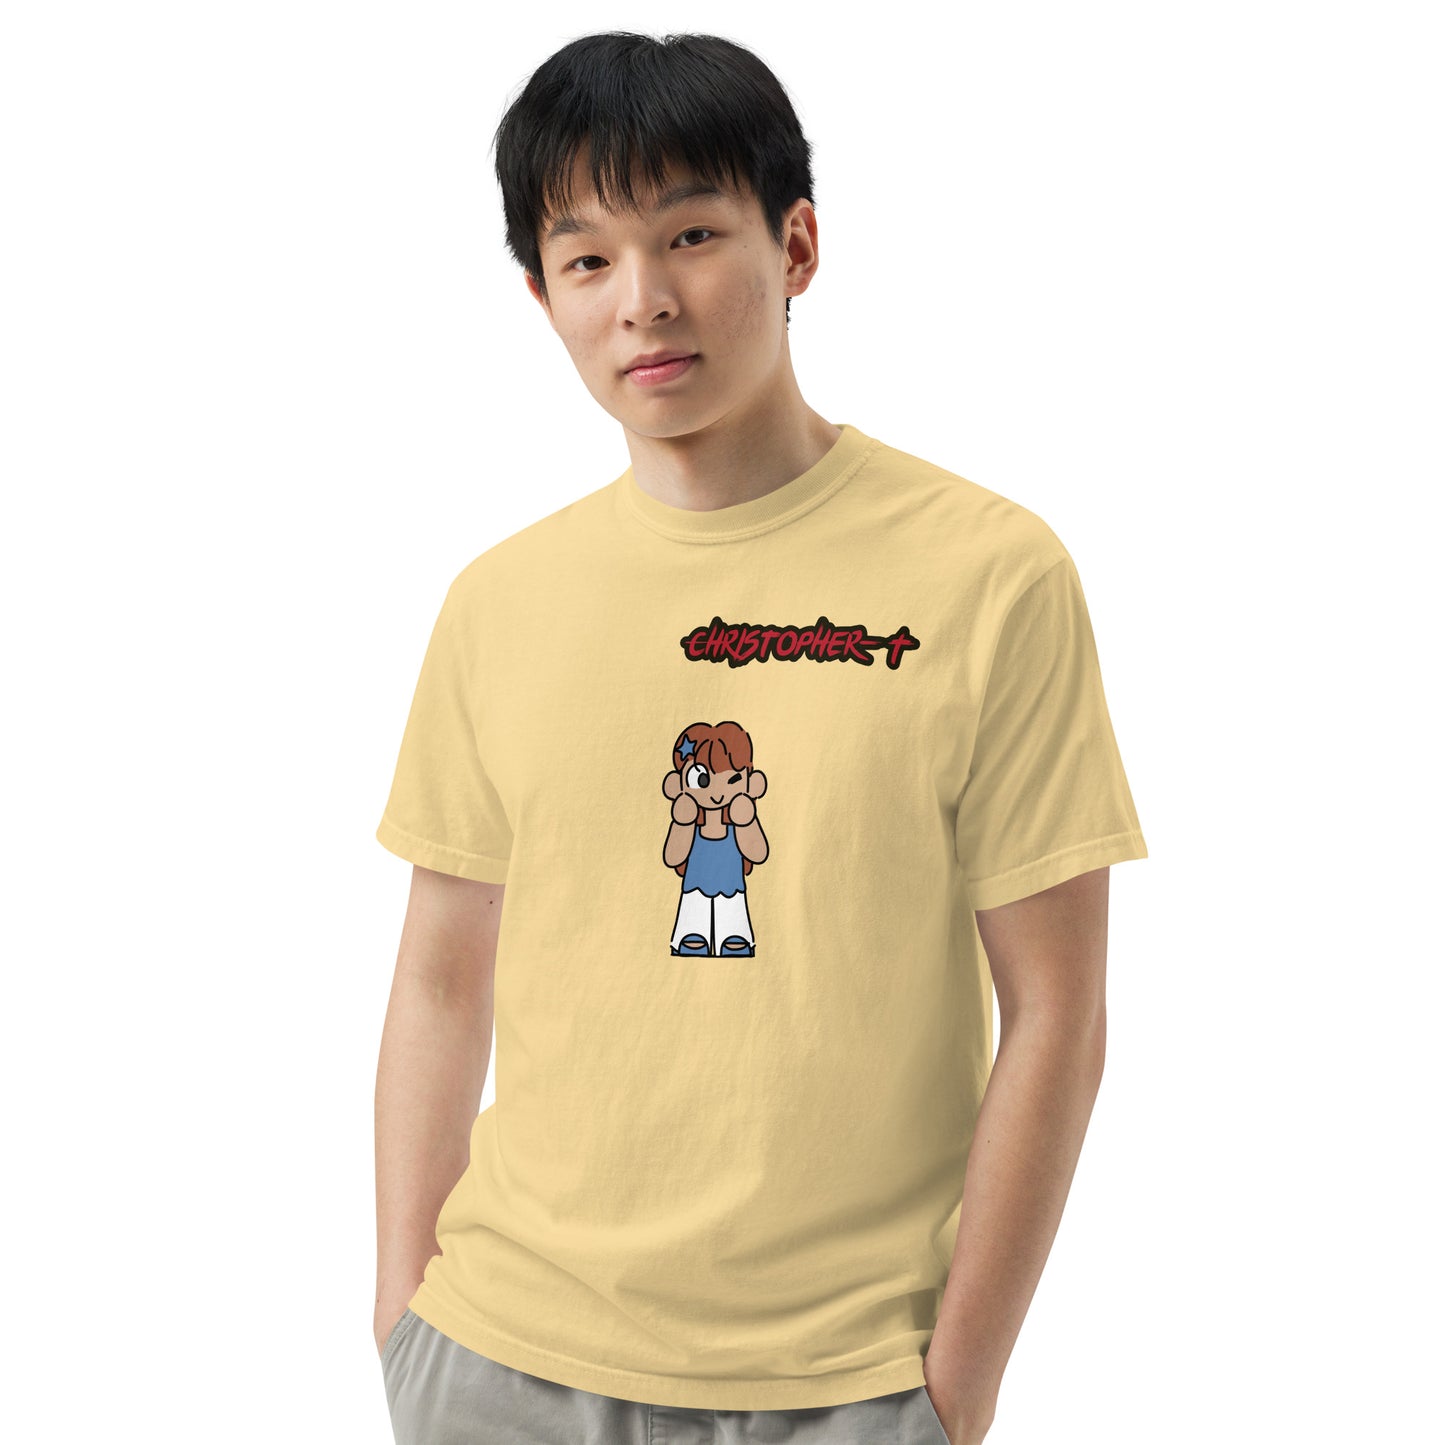 Christopher-T Unisex garment-dyed heavyweight t-shirt